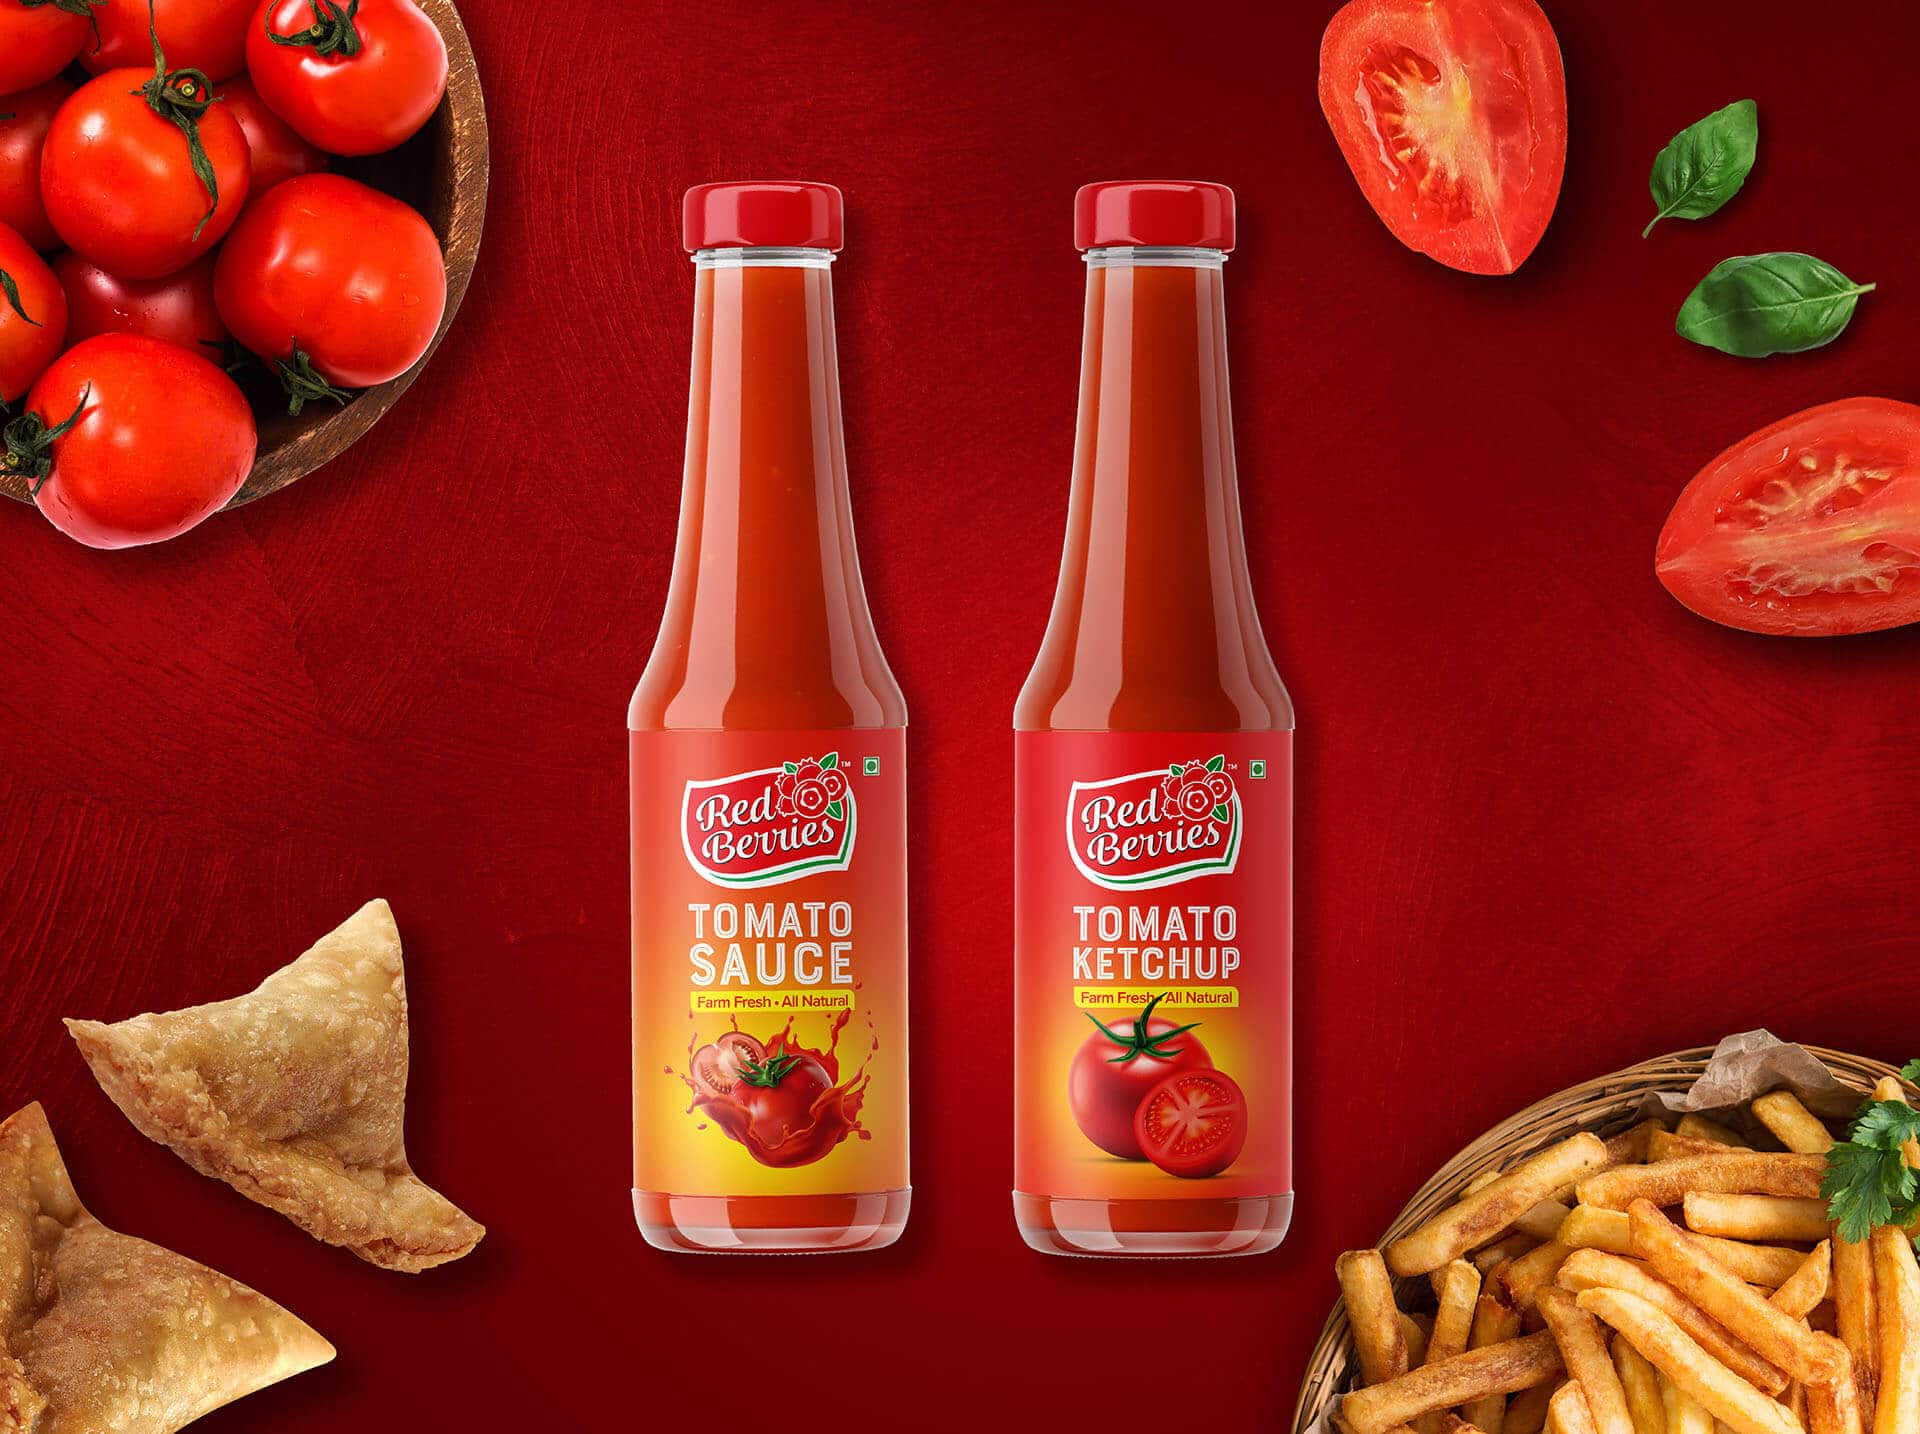 Red Berries Tomato Sauce Ketchup Vatitude Building Smarter Brands